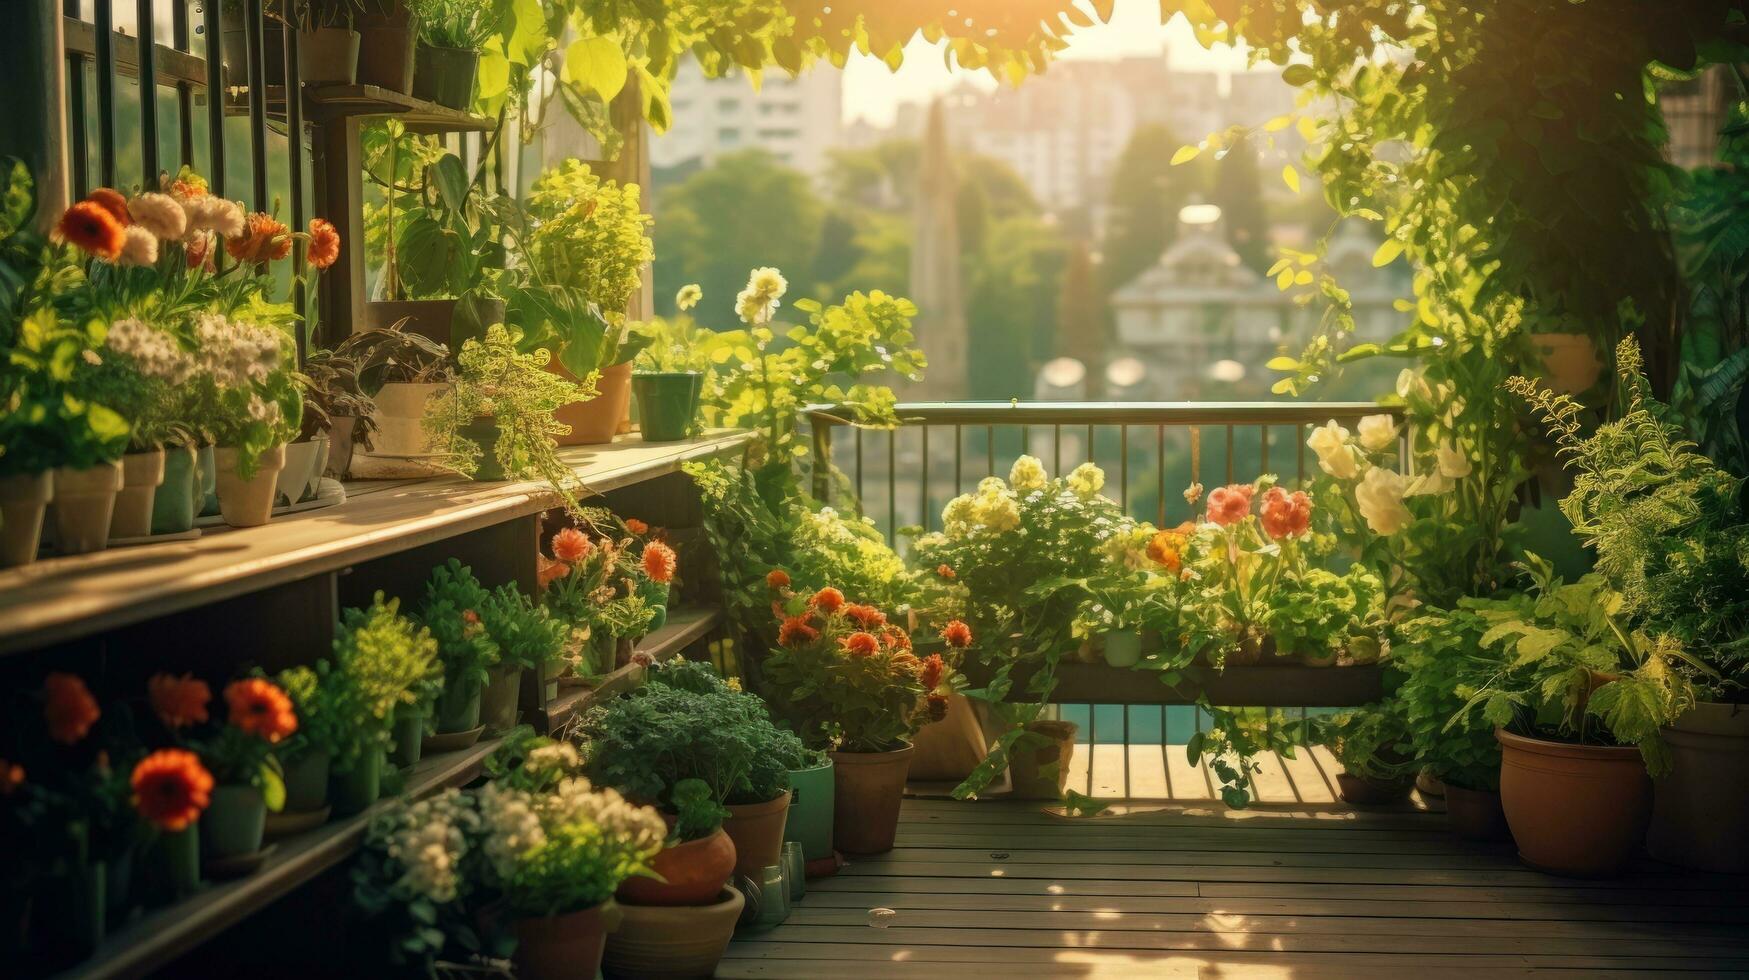 terraza con en conserva plantas y flores foto